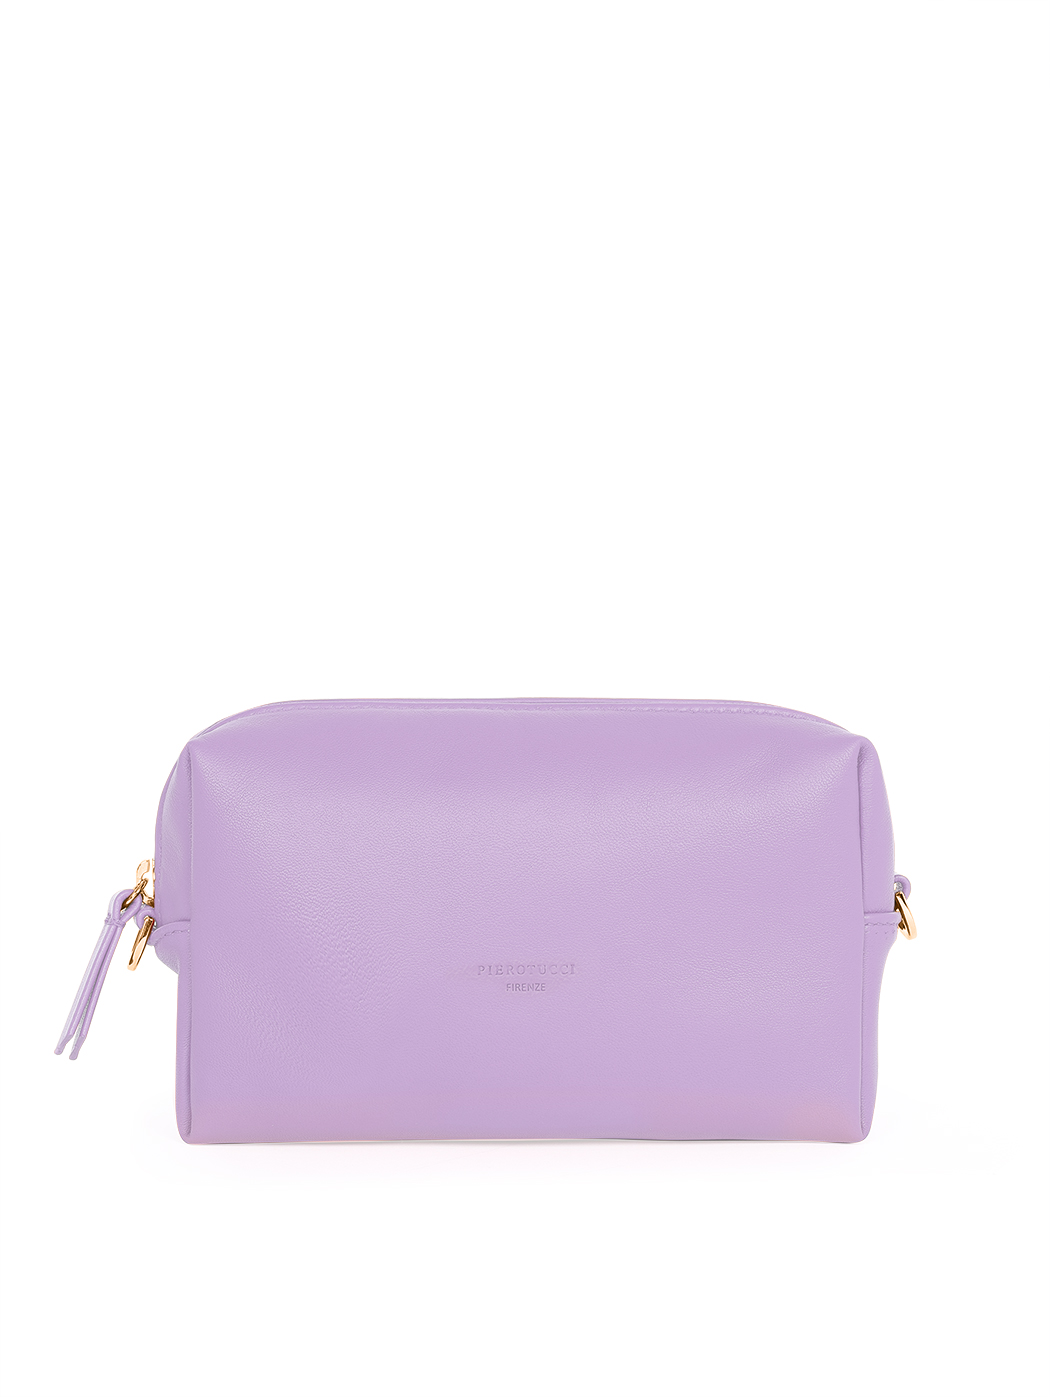 Прямоугольная сумочка с регулируемым ремнем лилового цвета